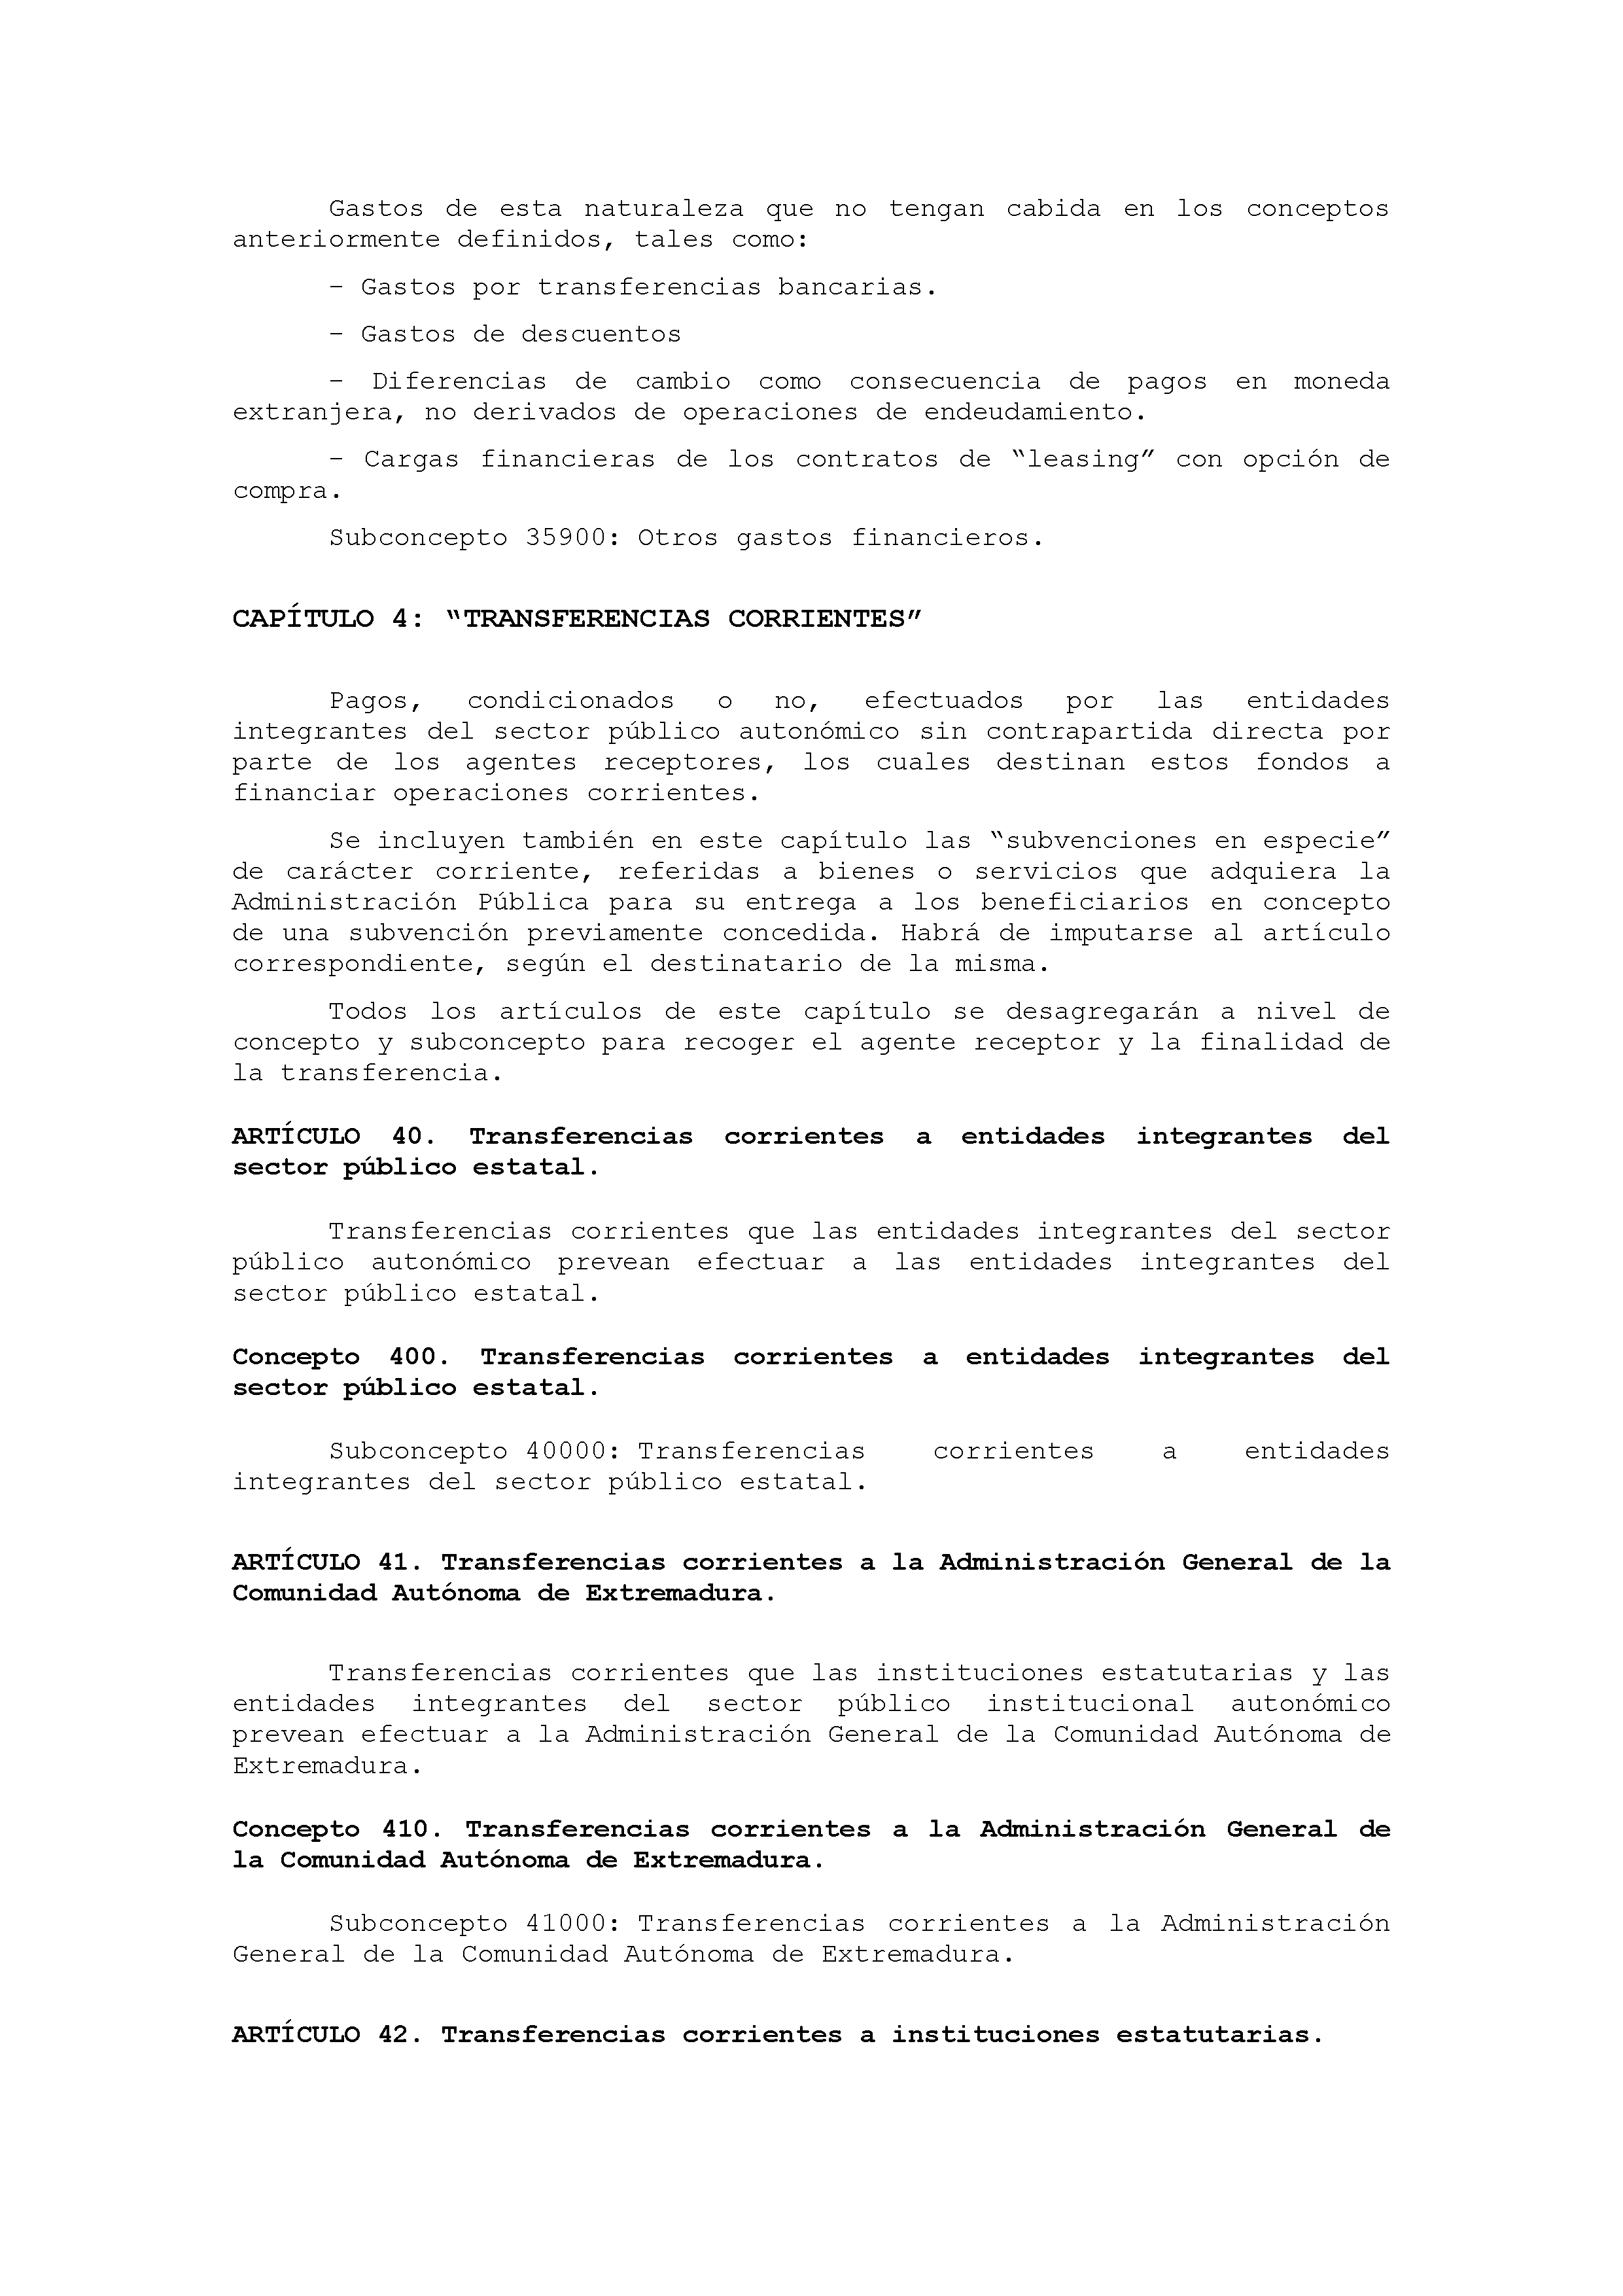 ANEXO IX CÓDIGO DE LA CLASIFICACIÓN ECONÓMICA DE LOS GASTOS PÚBLICOS Pag 31